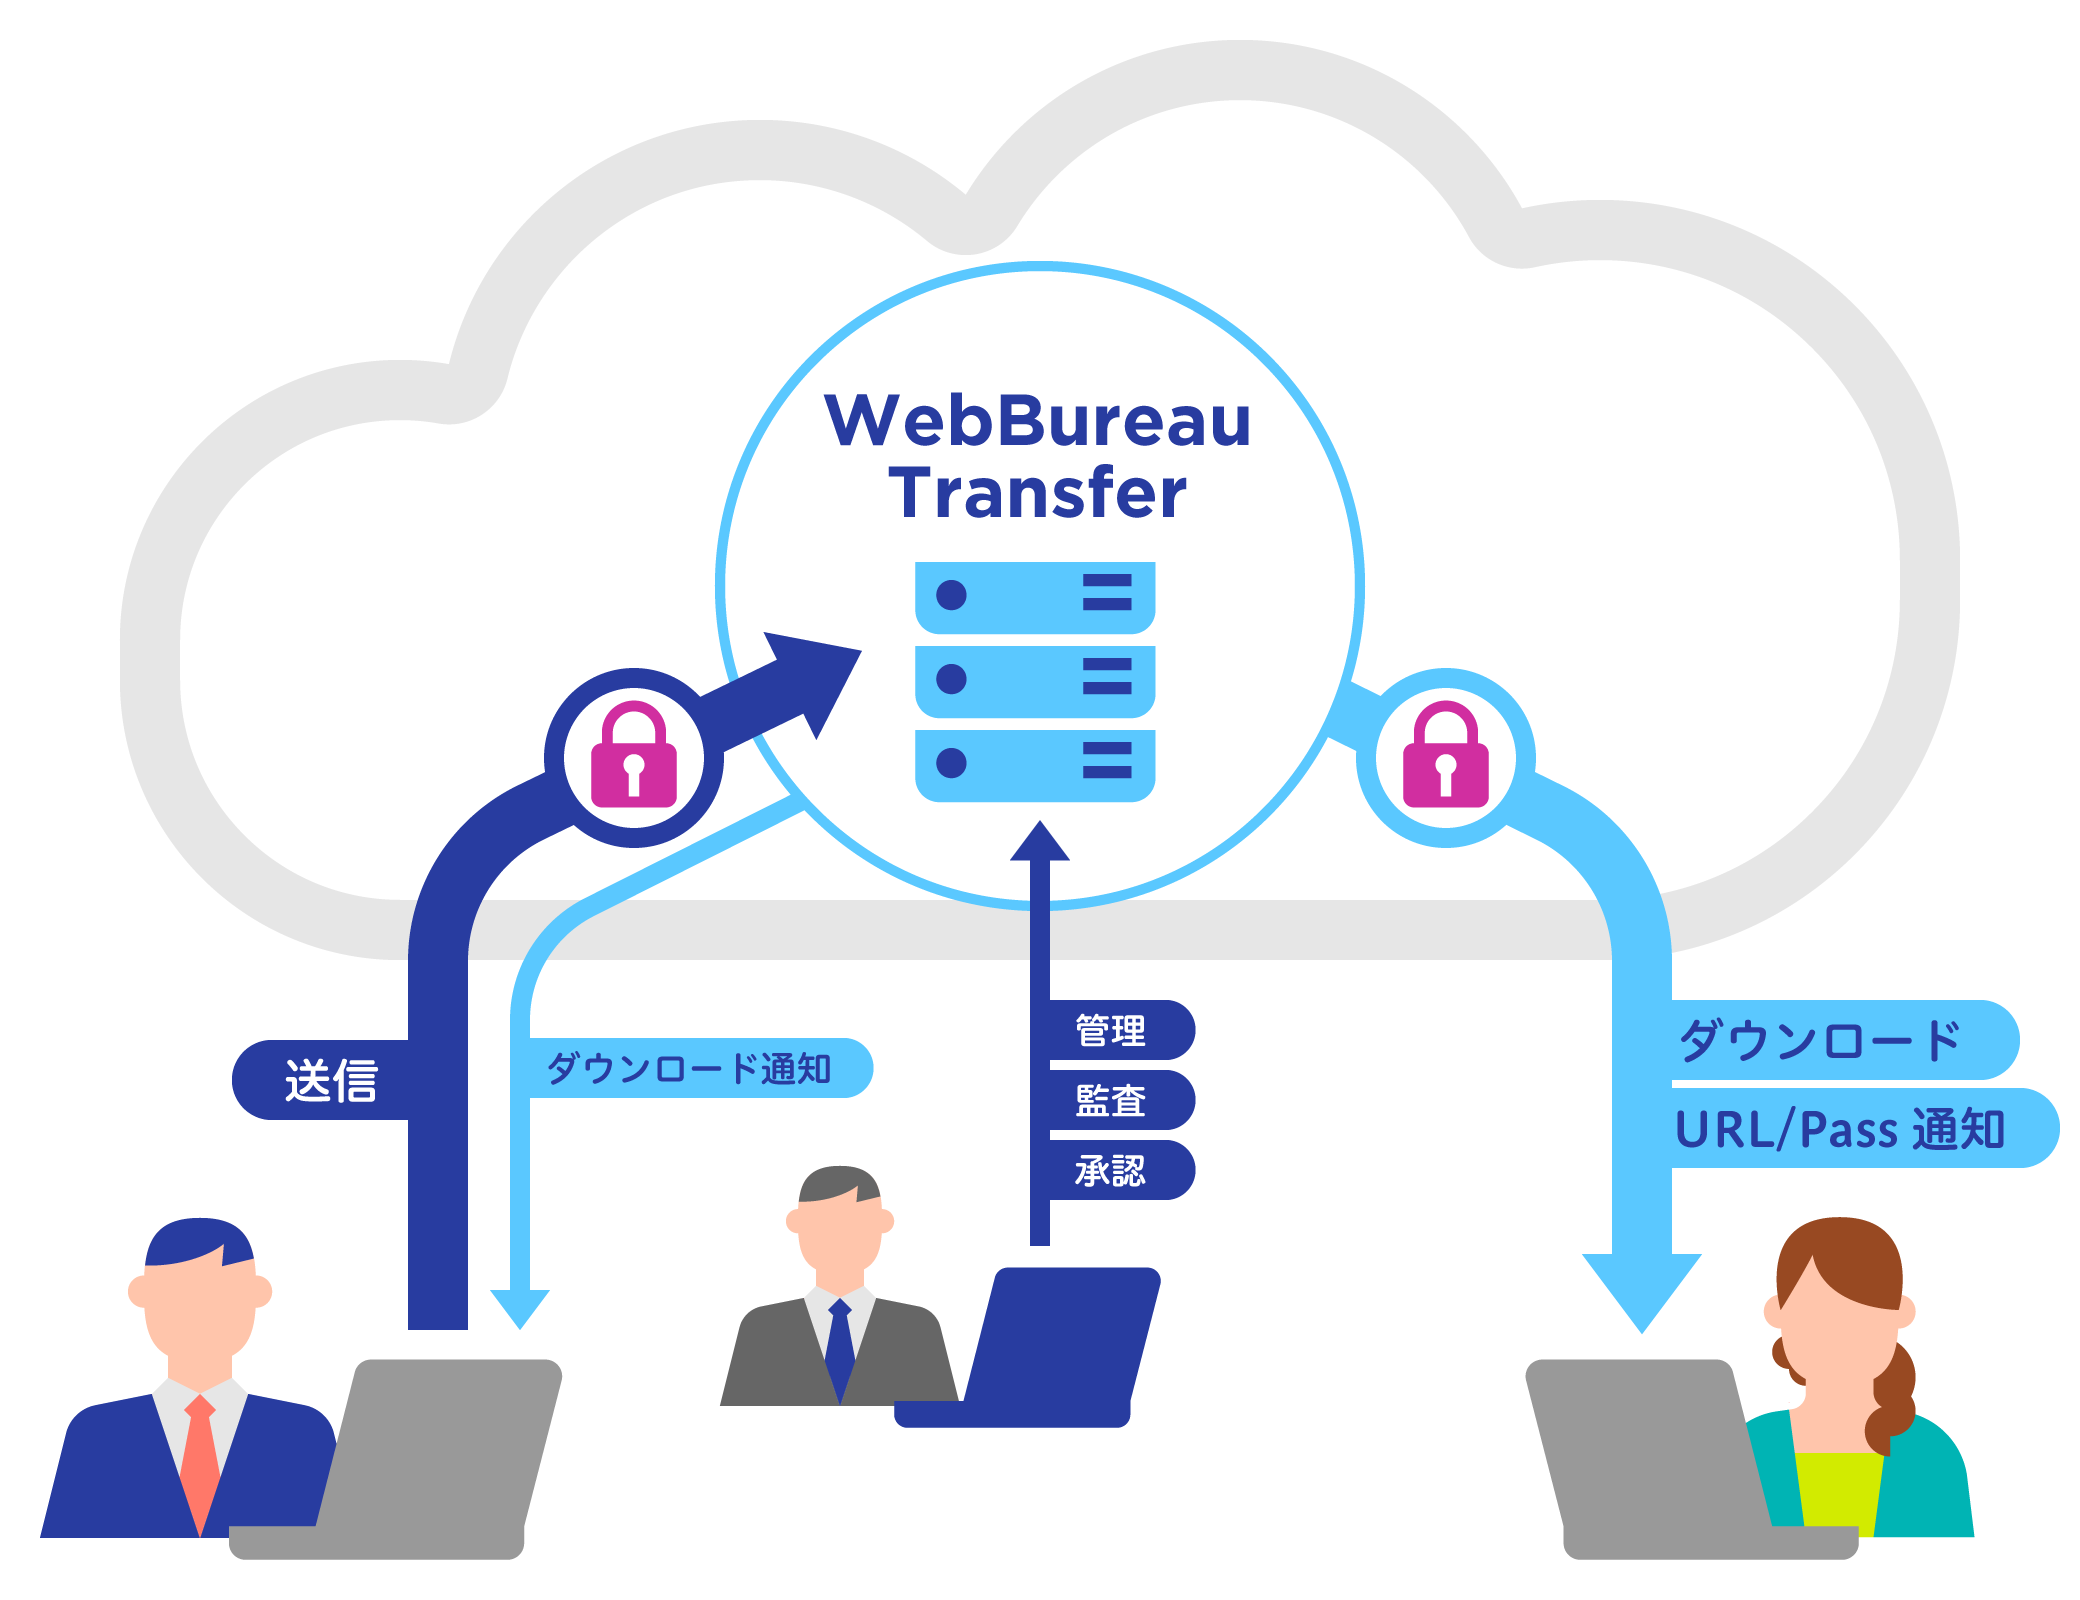 WebBureau Transfer概要図